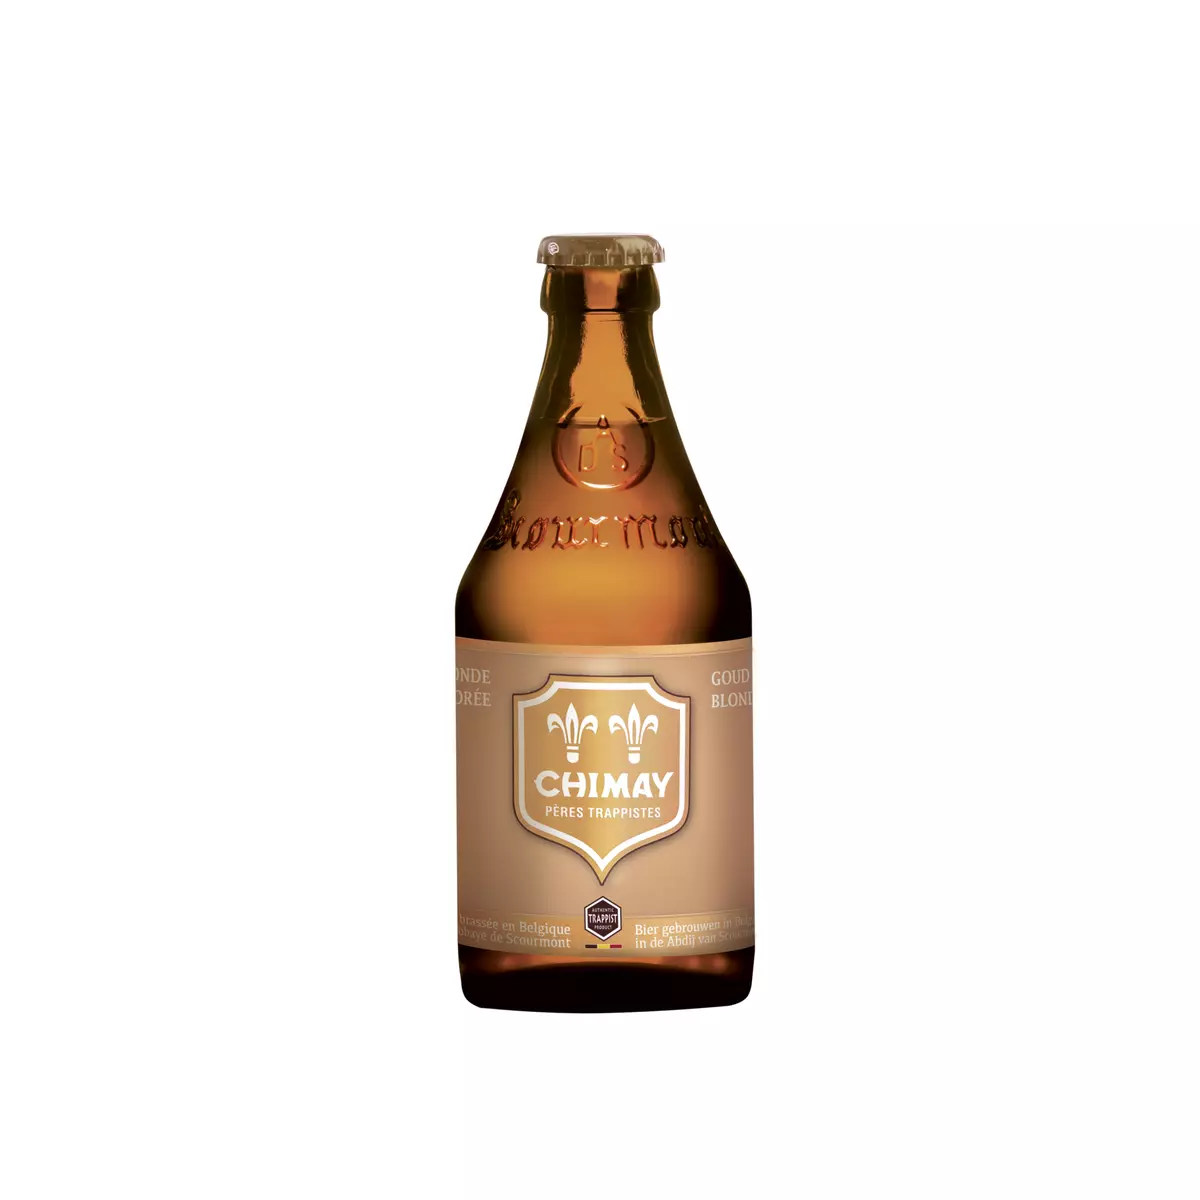 CHIMAY Bière blonde dorée 4,8% bouteille 33cl